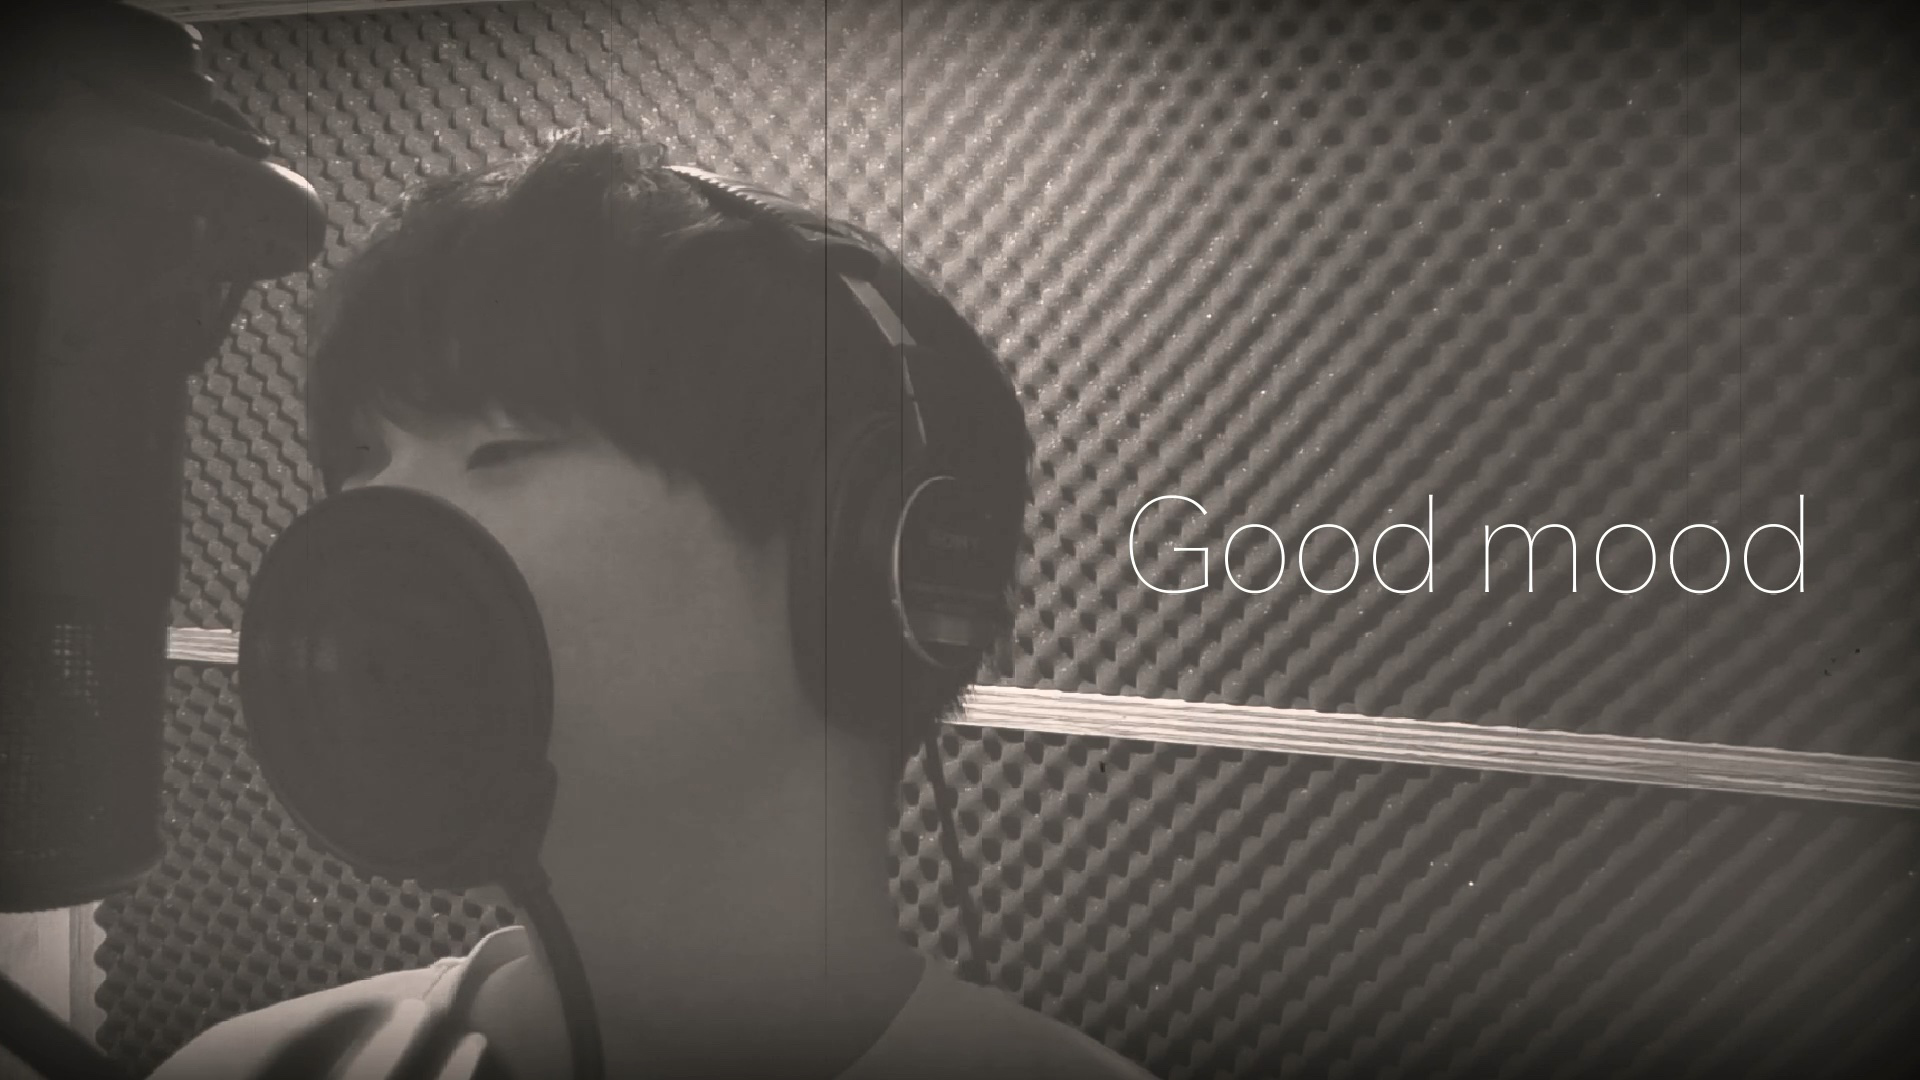 内田雄馬さん 9thシングル「Good mood」発売決定